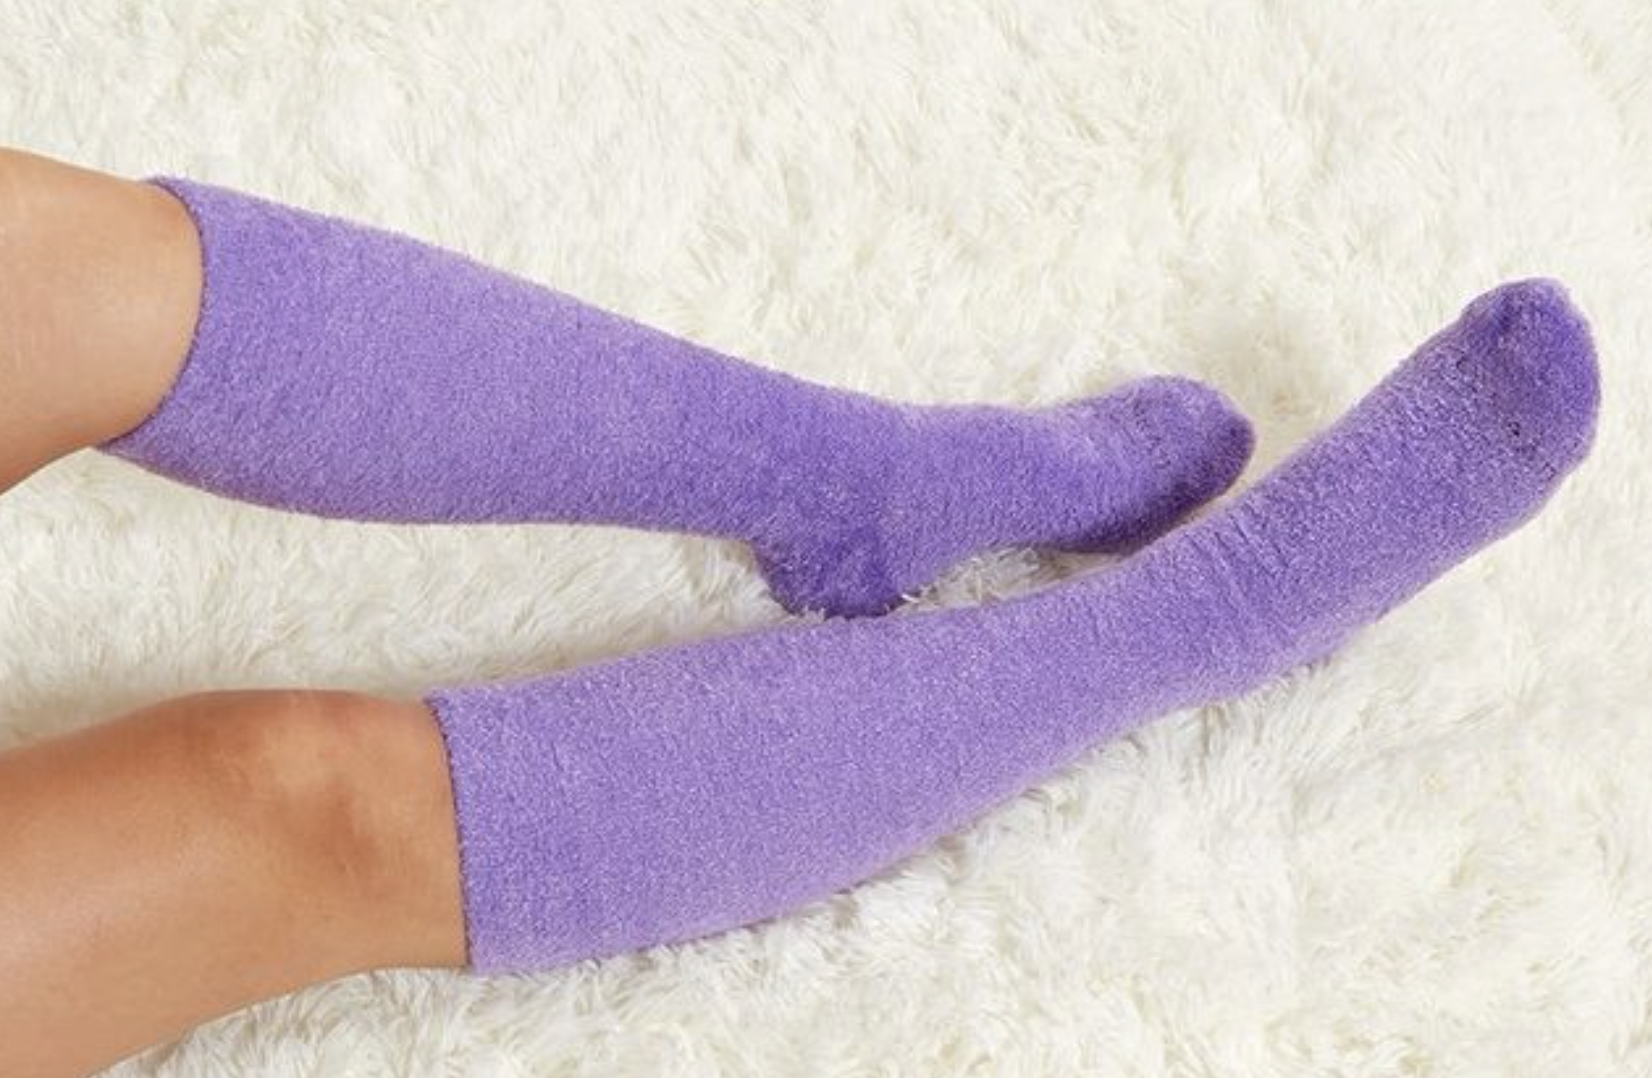 model wearing the purple fuzzy socks